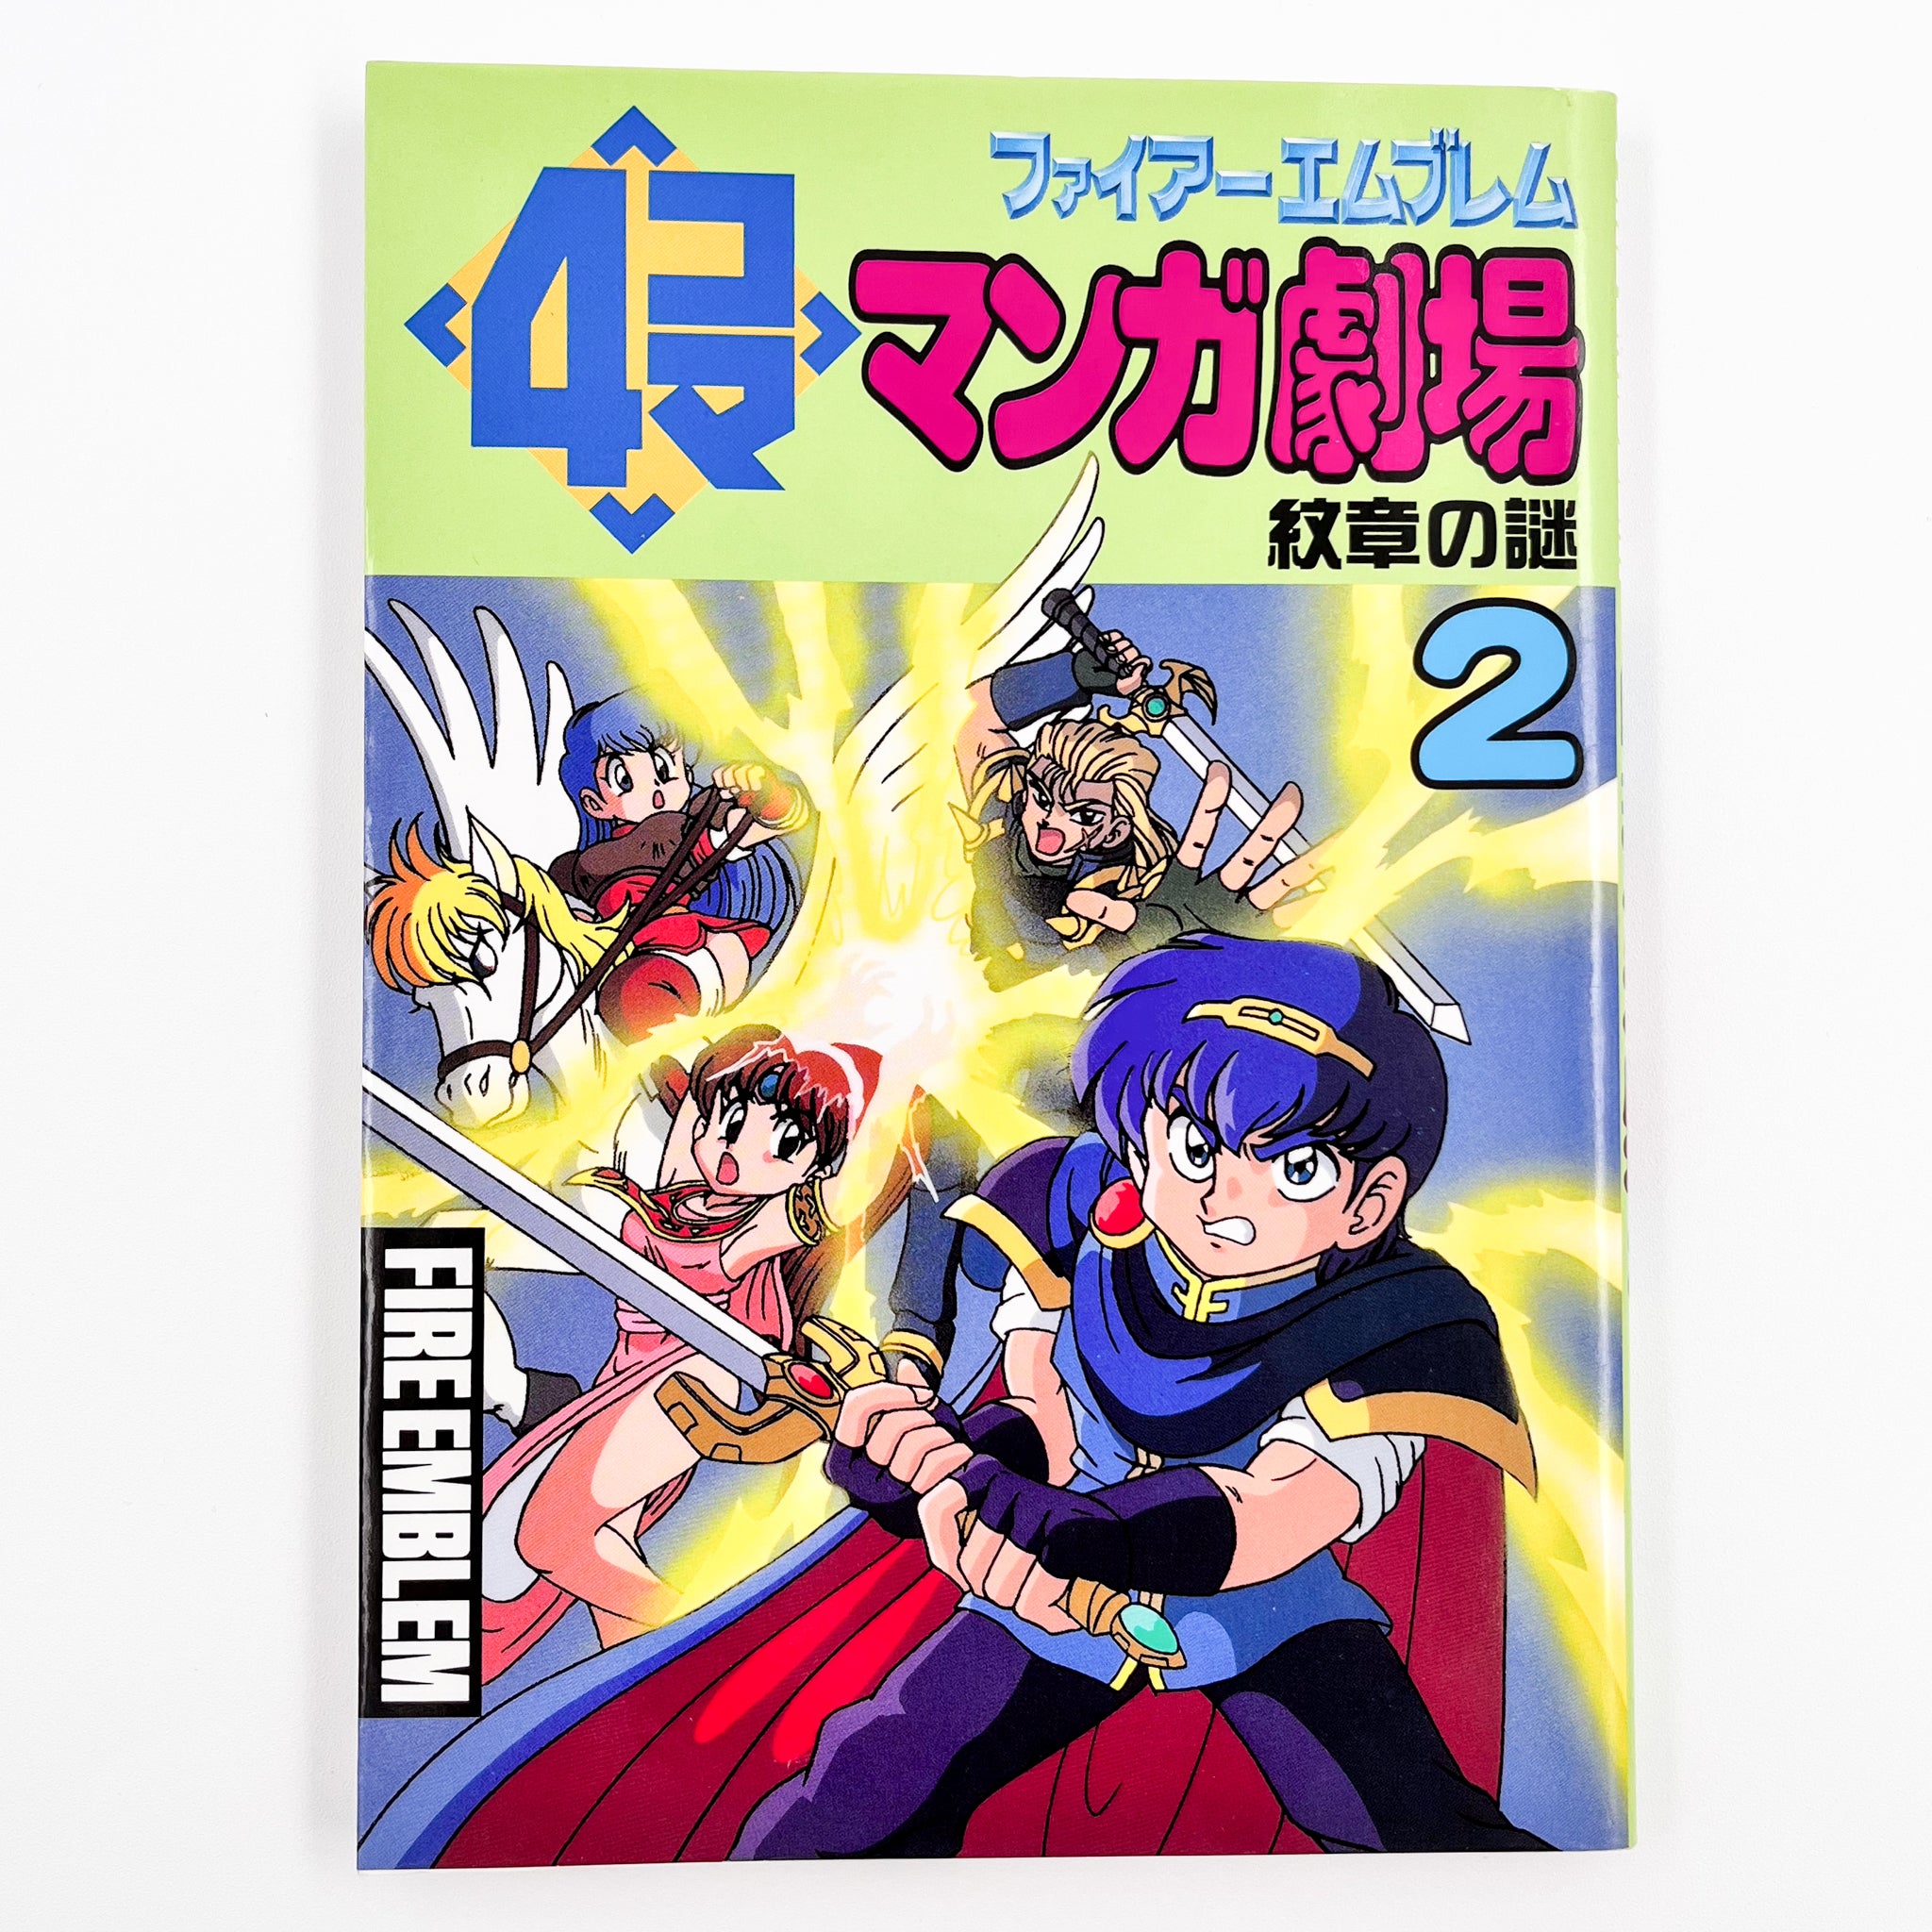 Fire Emblem 4koma Manga Theater Volume 2 Cover